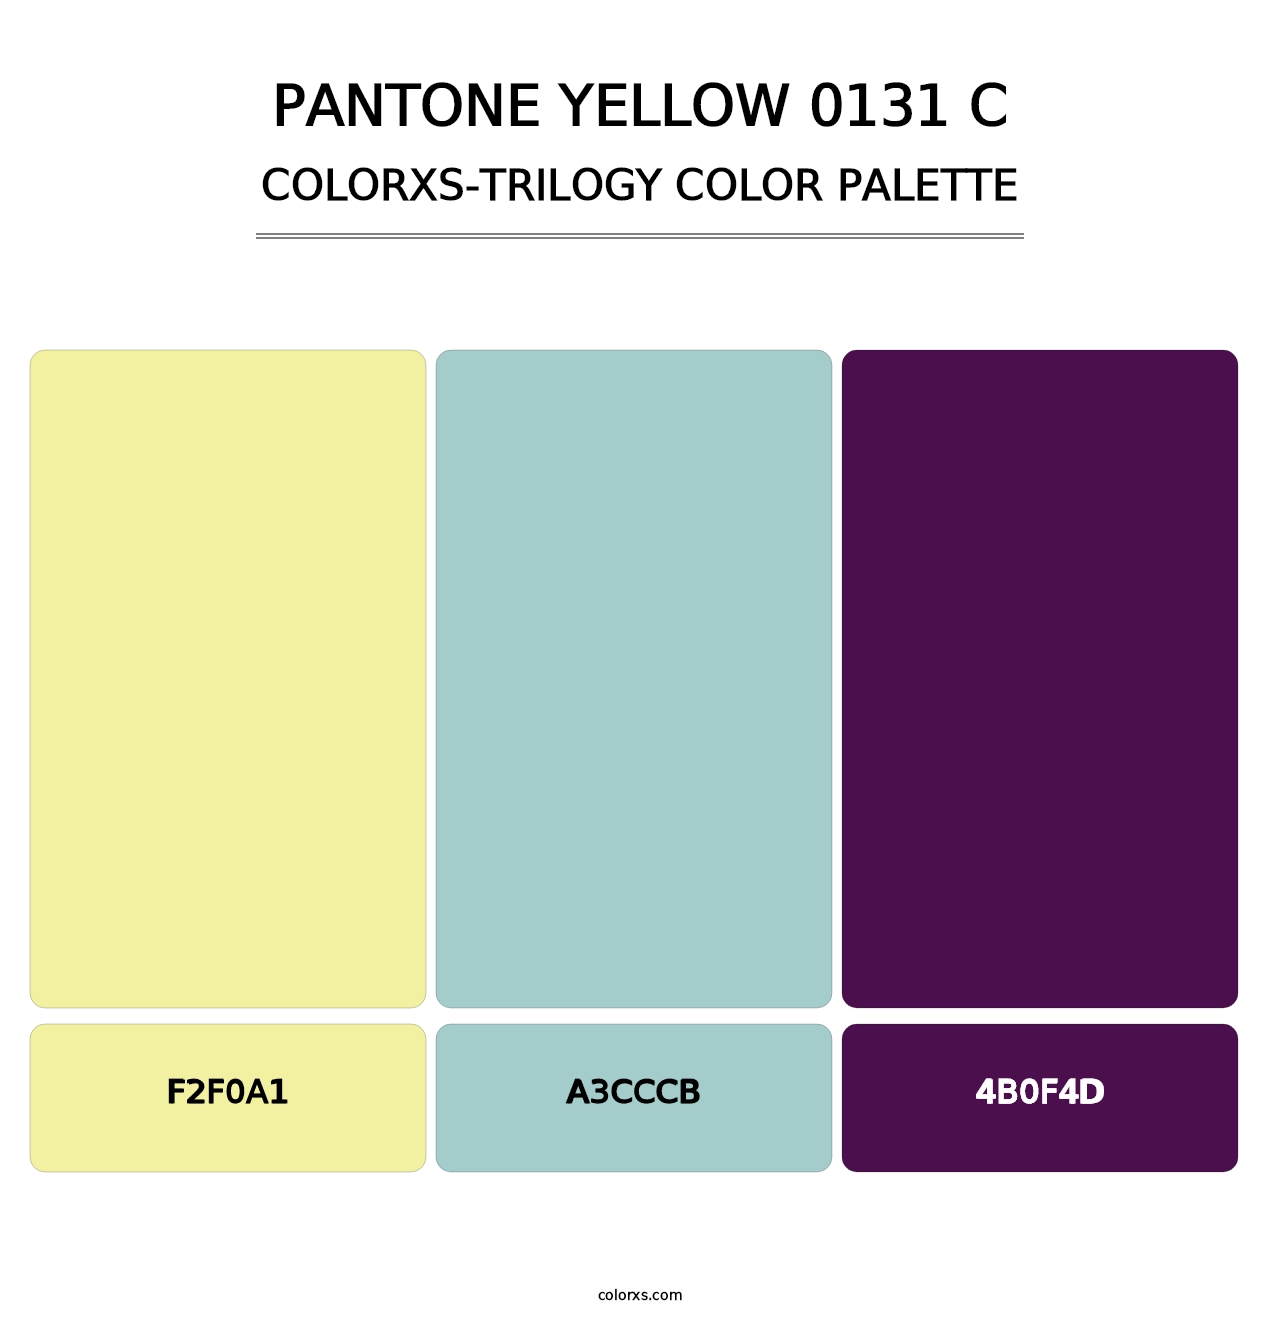 PANTONE Yellow 0131 C - Colorxs Trilogy Palette